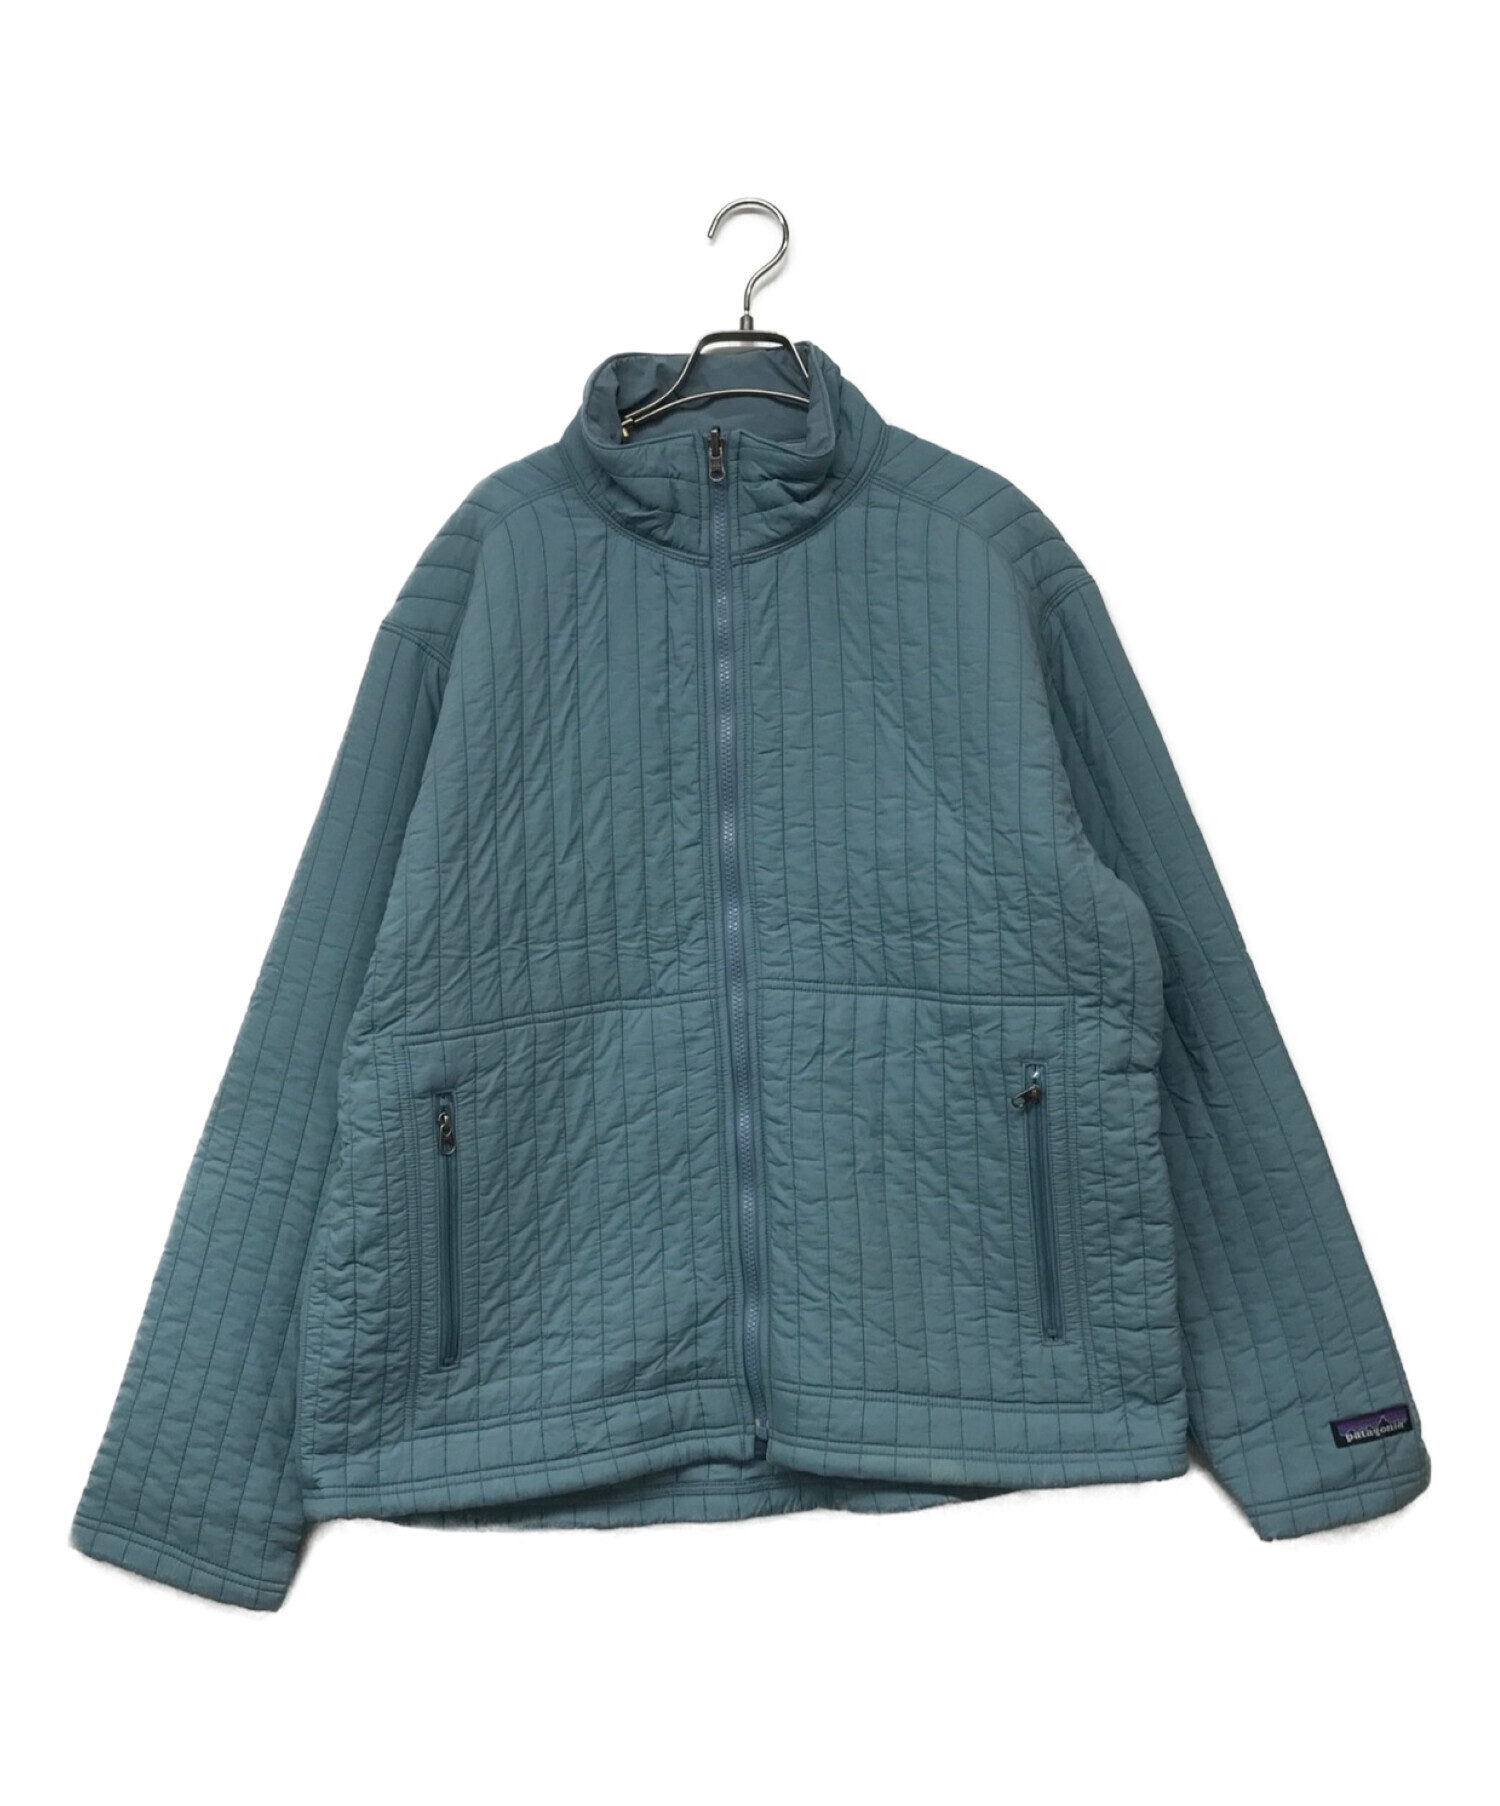 Patagonia (パタゴニア) キルティングジャケット ブルー サイズ:L